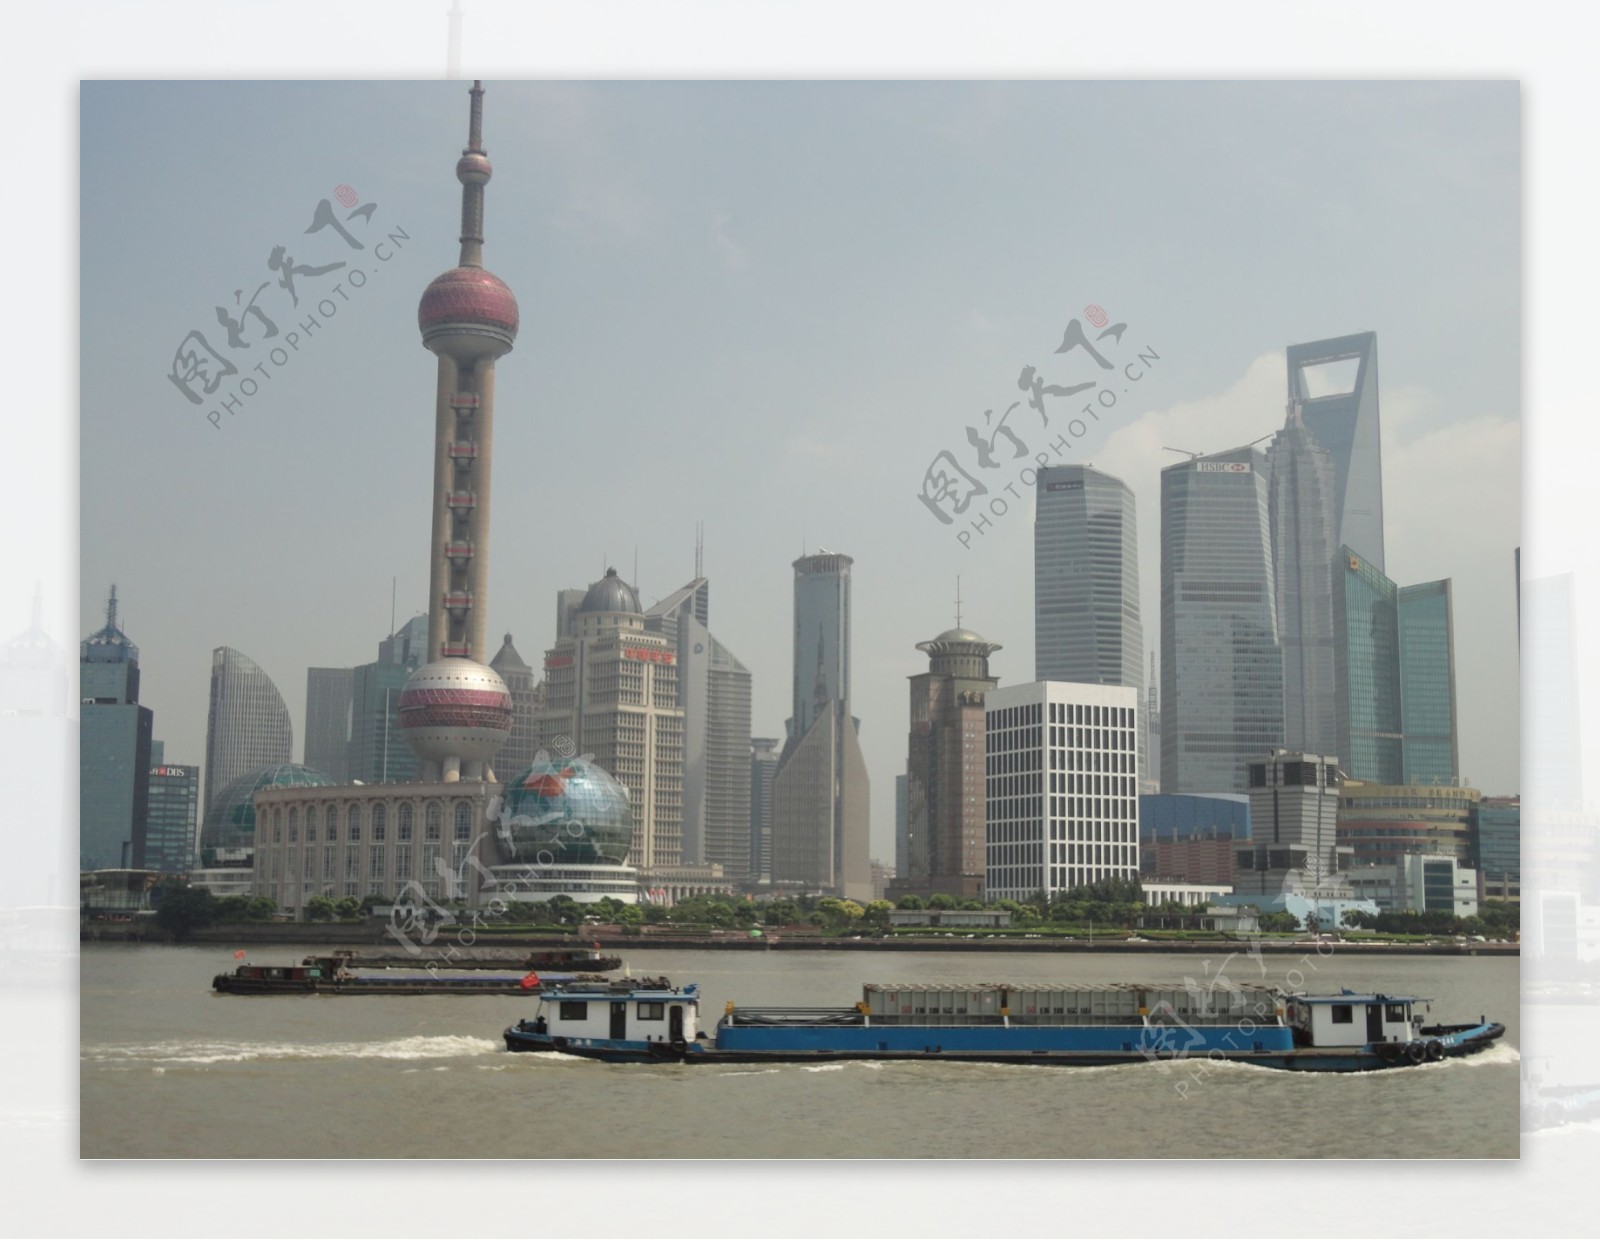 上海景观图片